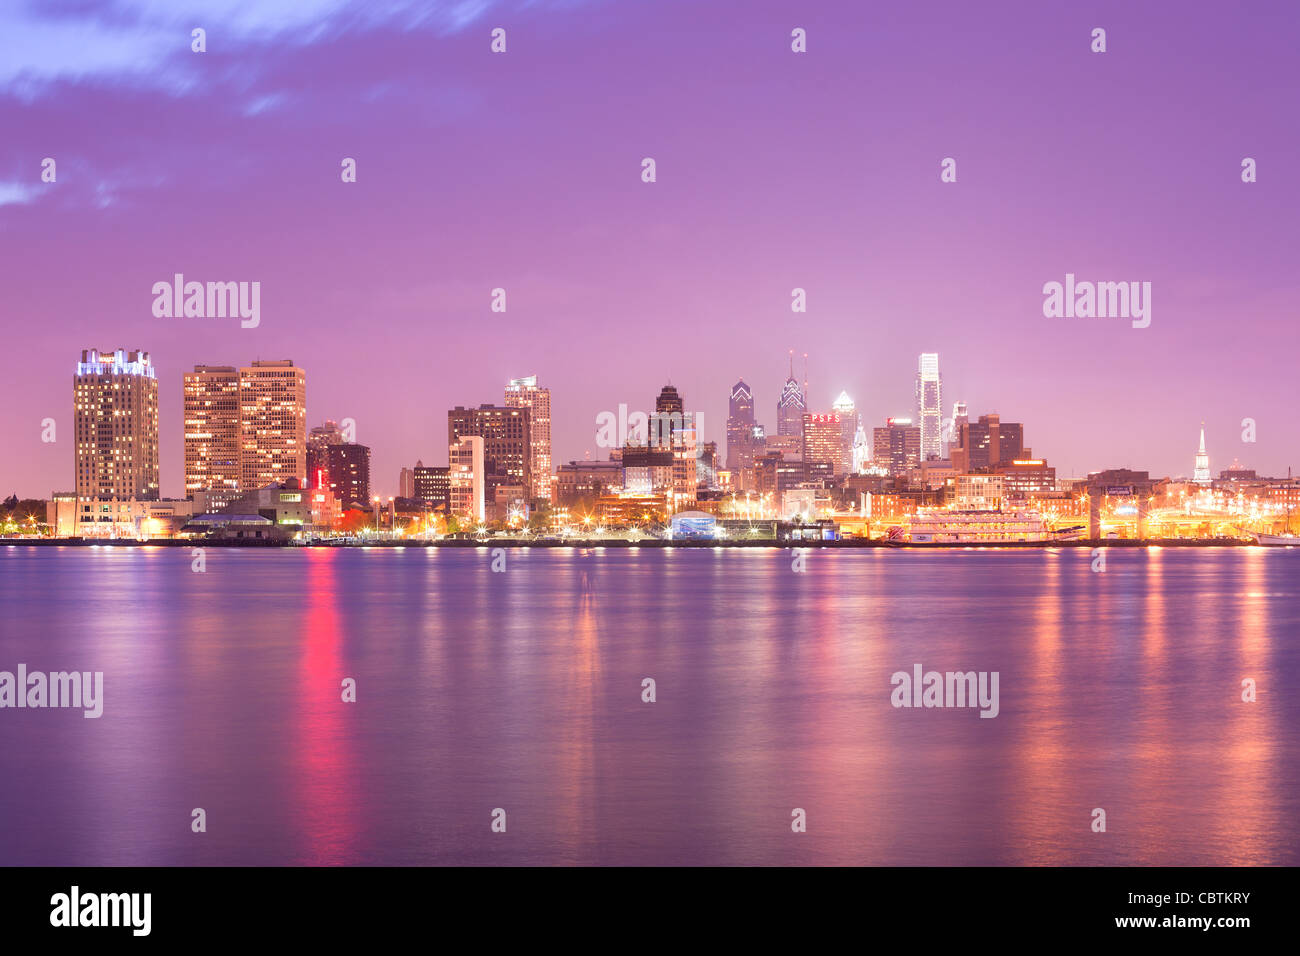 Skyline of downtown Philadelphia, Pennsylvania, USA Stock Photo